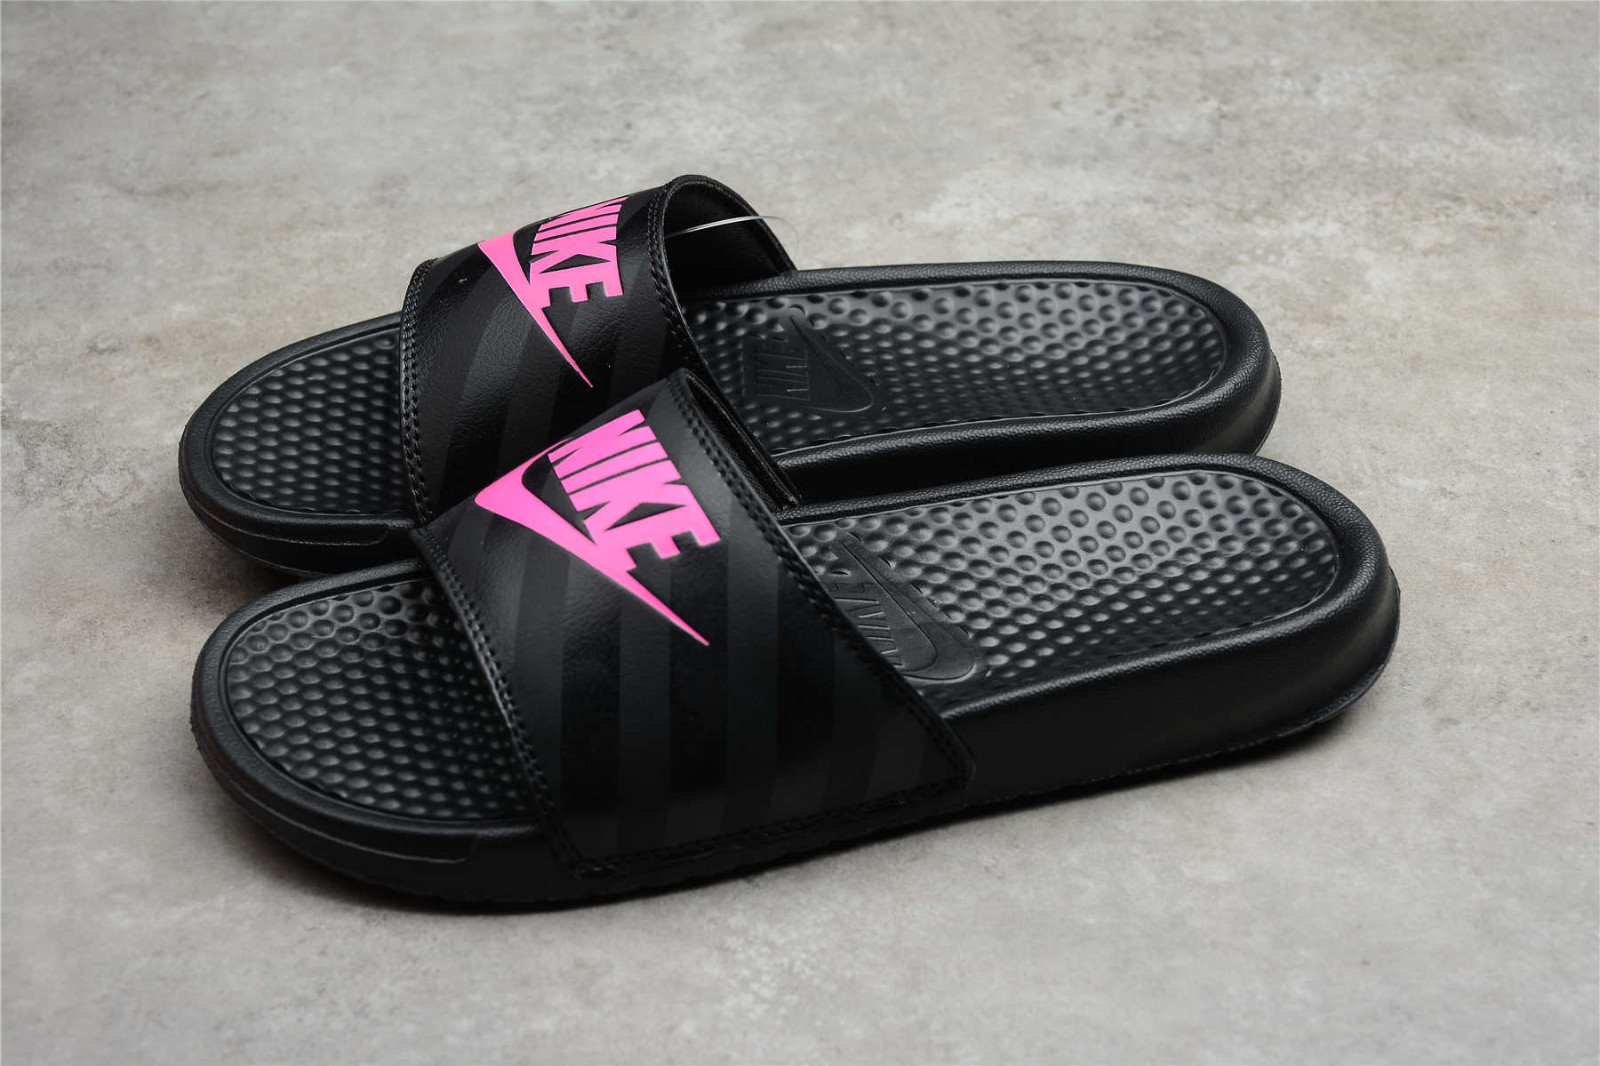 arbejdsløshed blød Lærd Nike Benassi JDI Slides Black Vivid Pink Shoes met 343881 - 061 -  MultiscaleconsultingShops - Your fitness regimen includes running